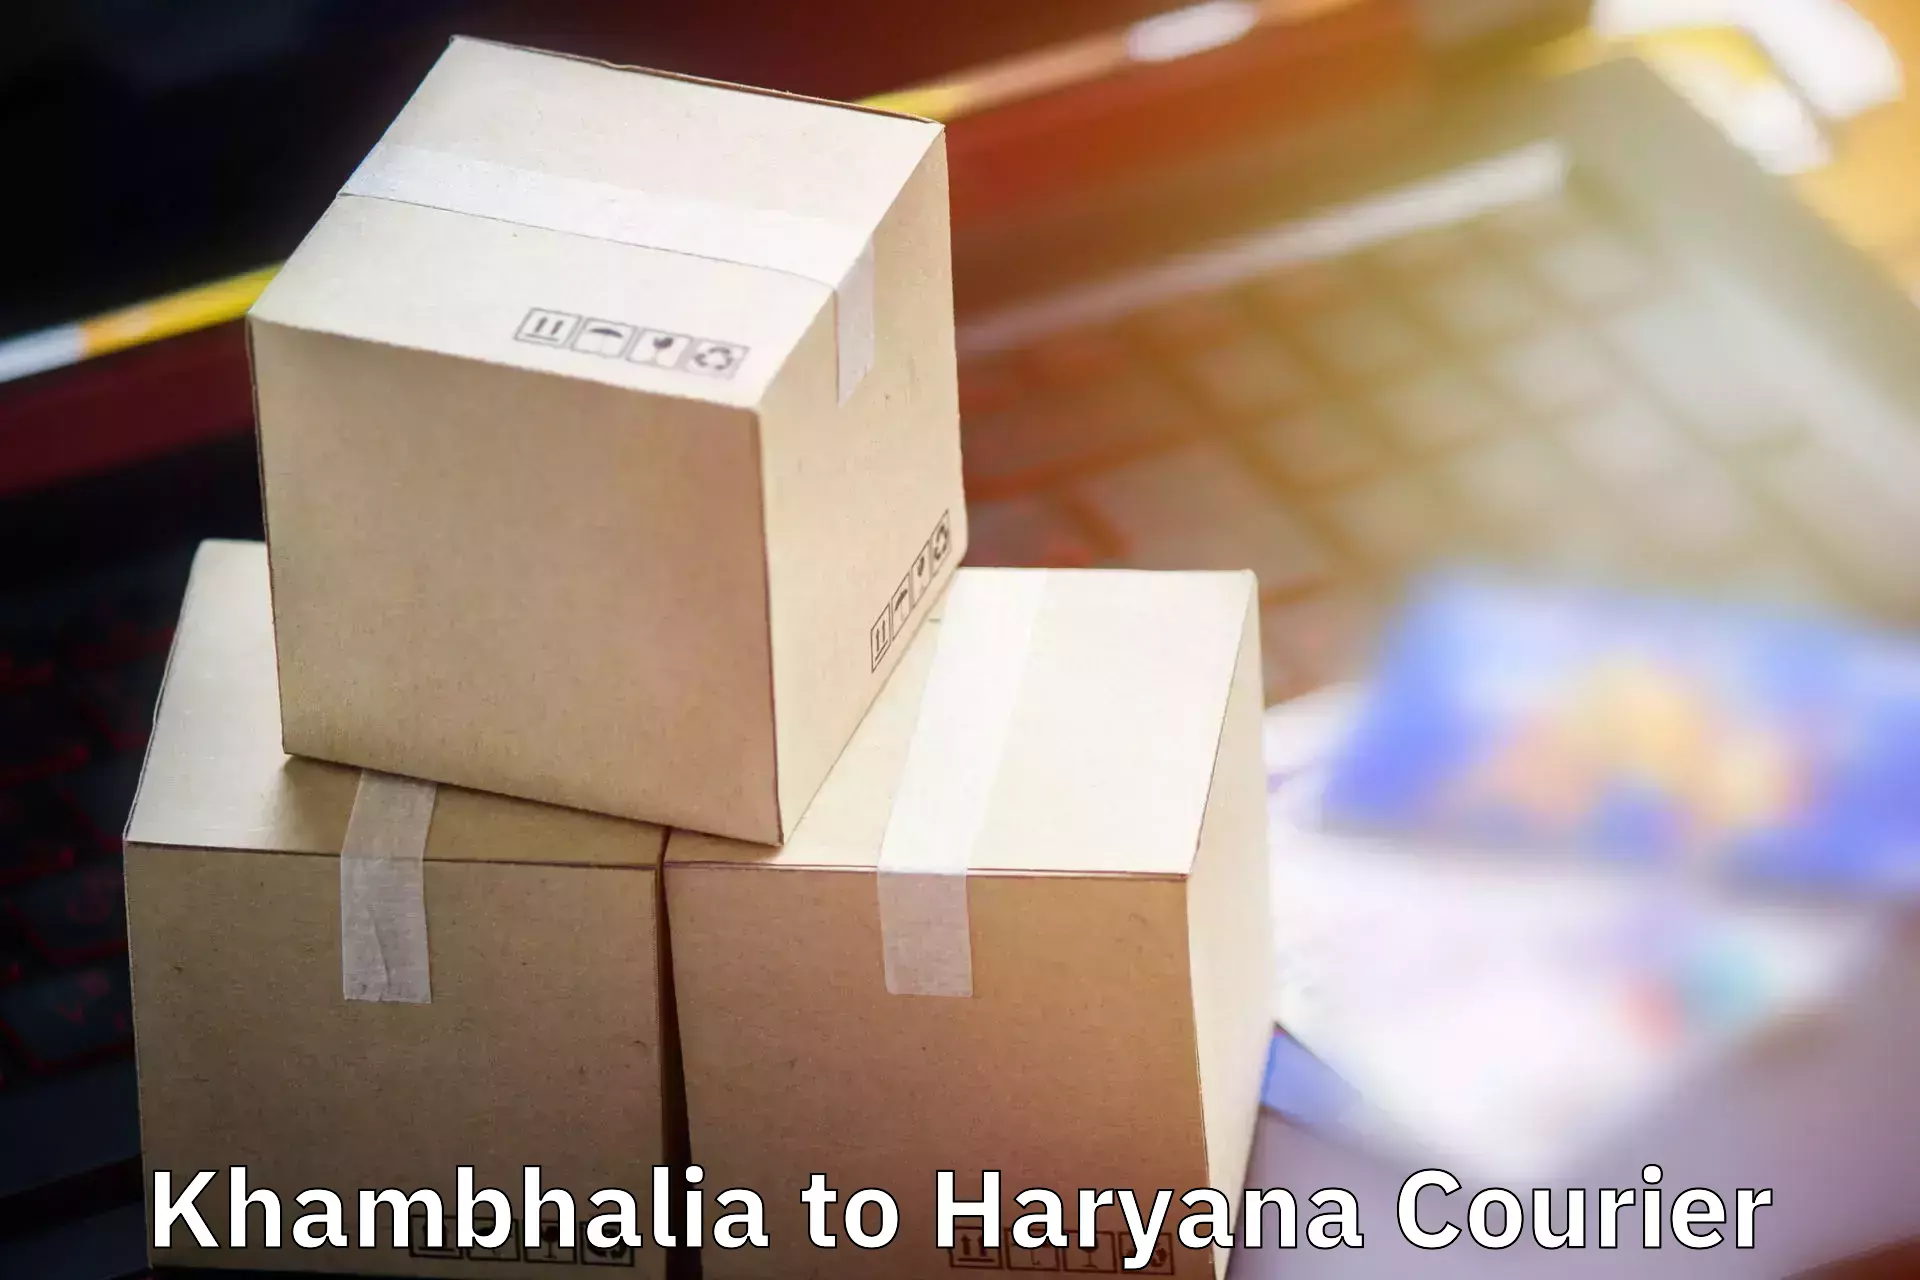 Luggage shipping guide Khambhalia to Gurugram